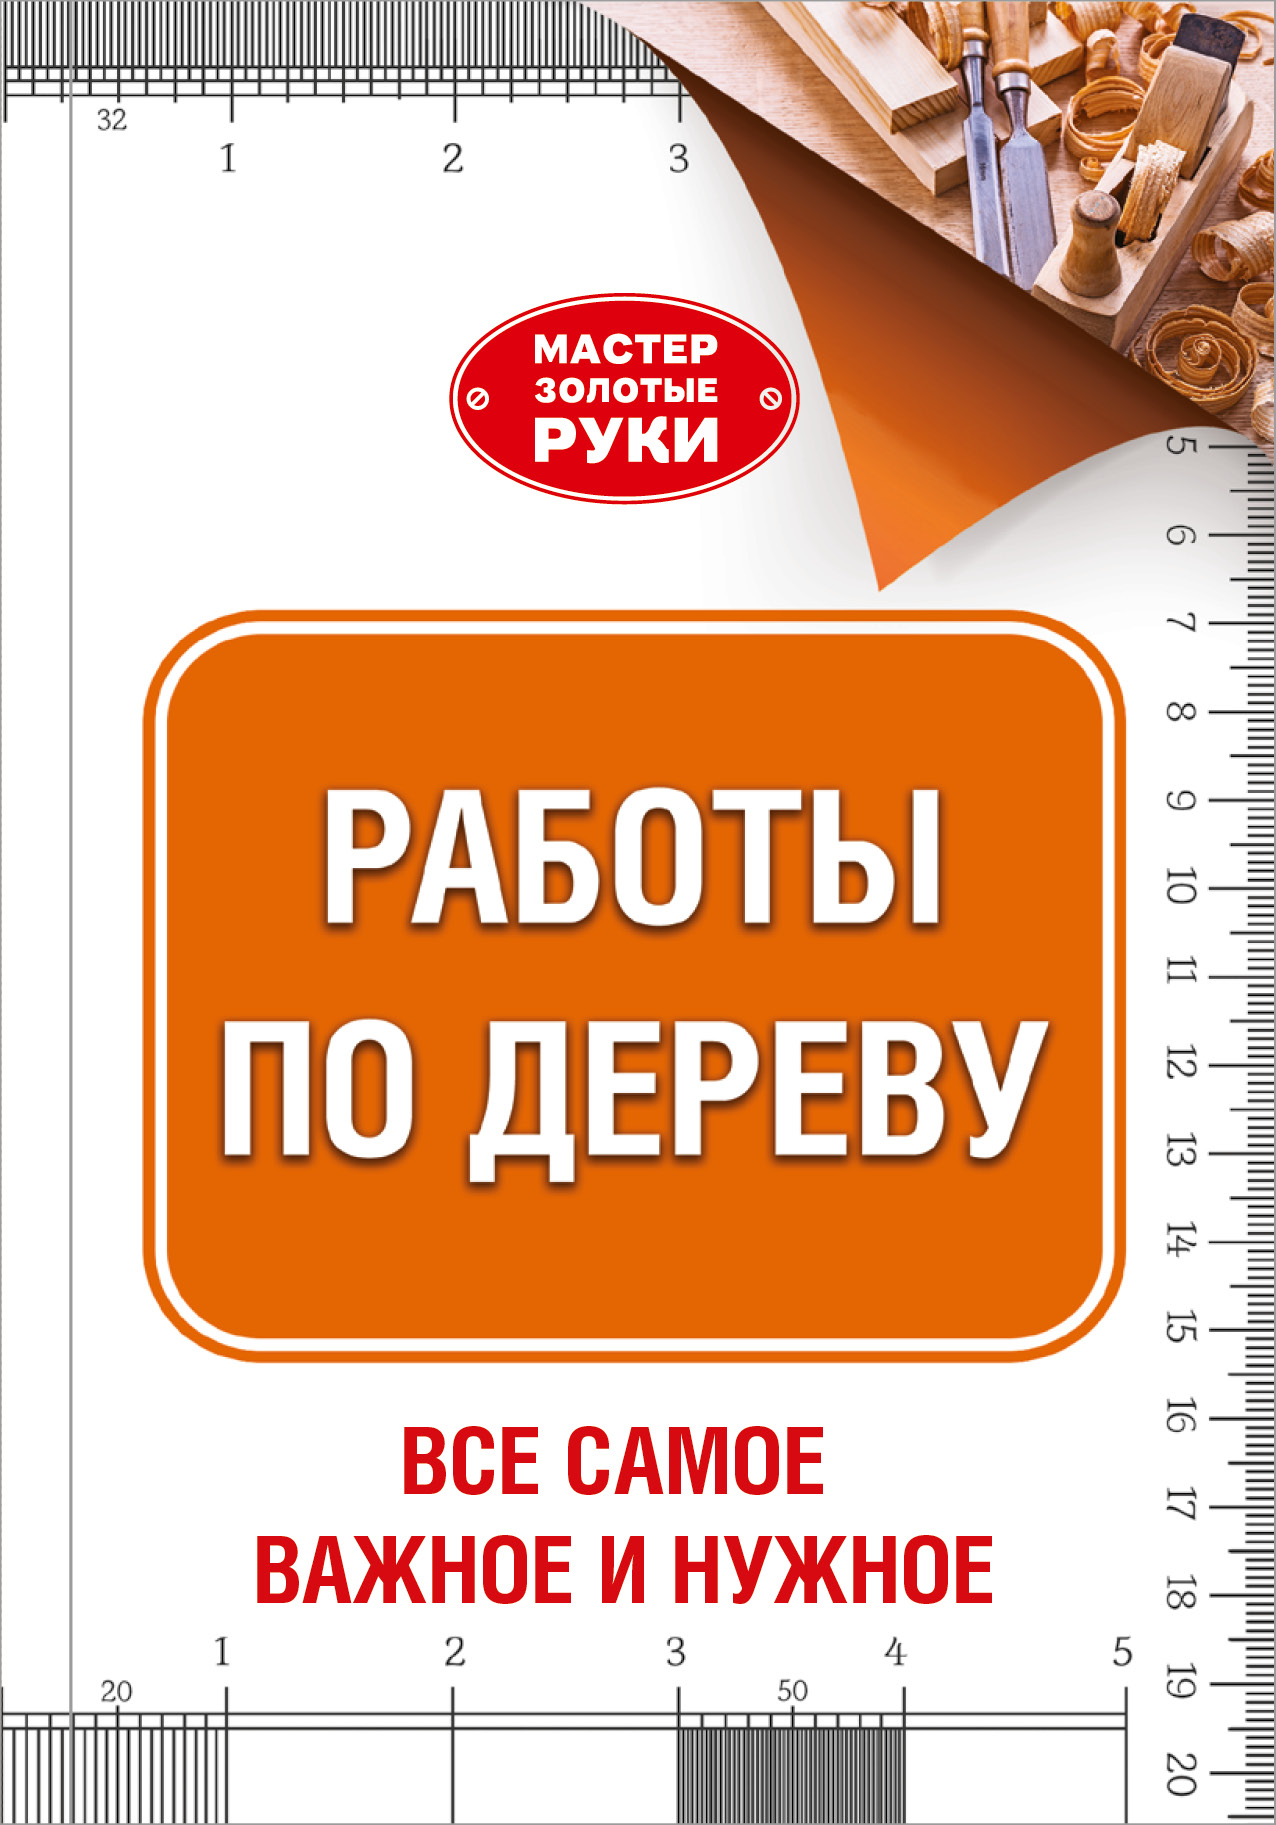 https://cdn.eksmo.ru/v2/ASE000000000720994/COVER/cover13d.jpg